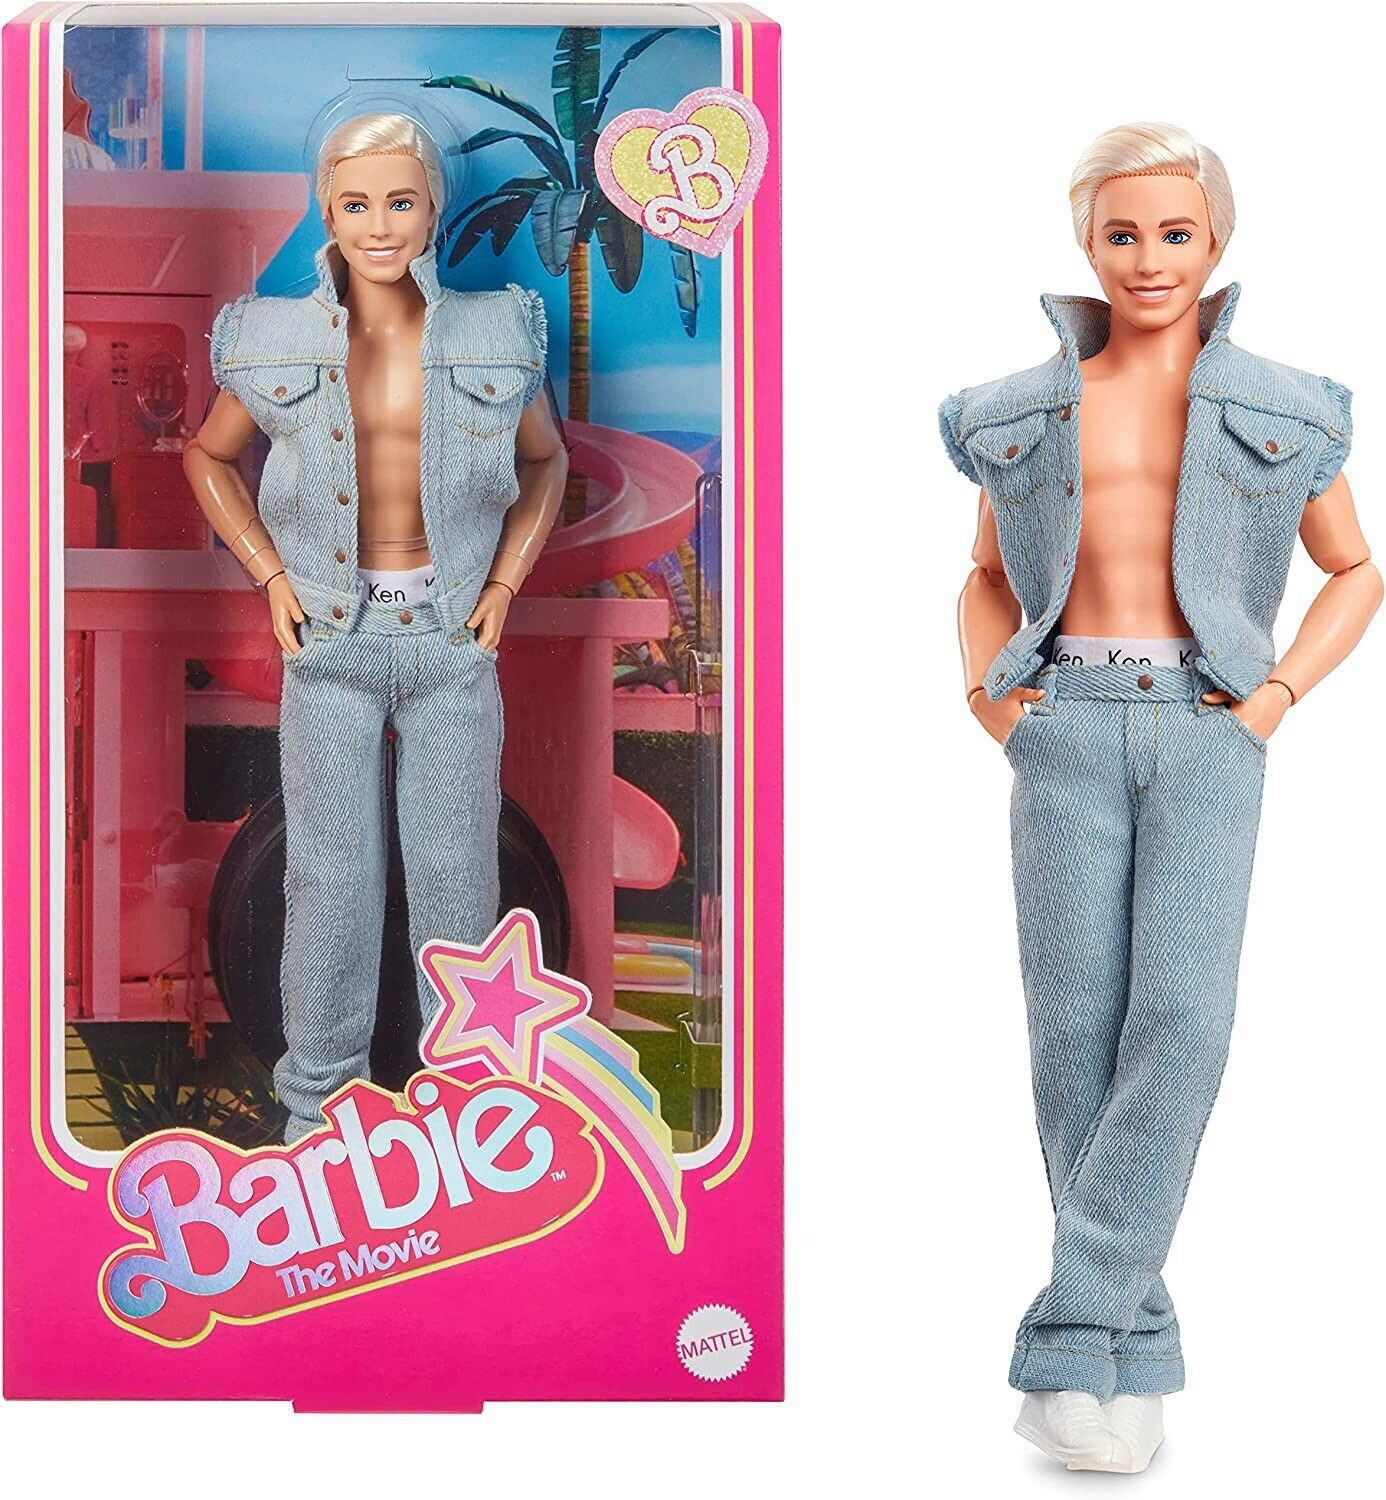 映画 「バービー」 ケン デニムファッション ドール Barbie The